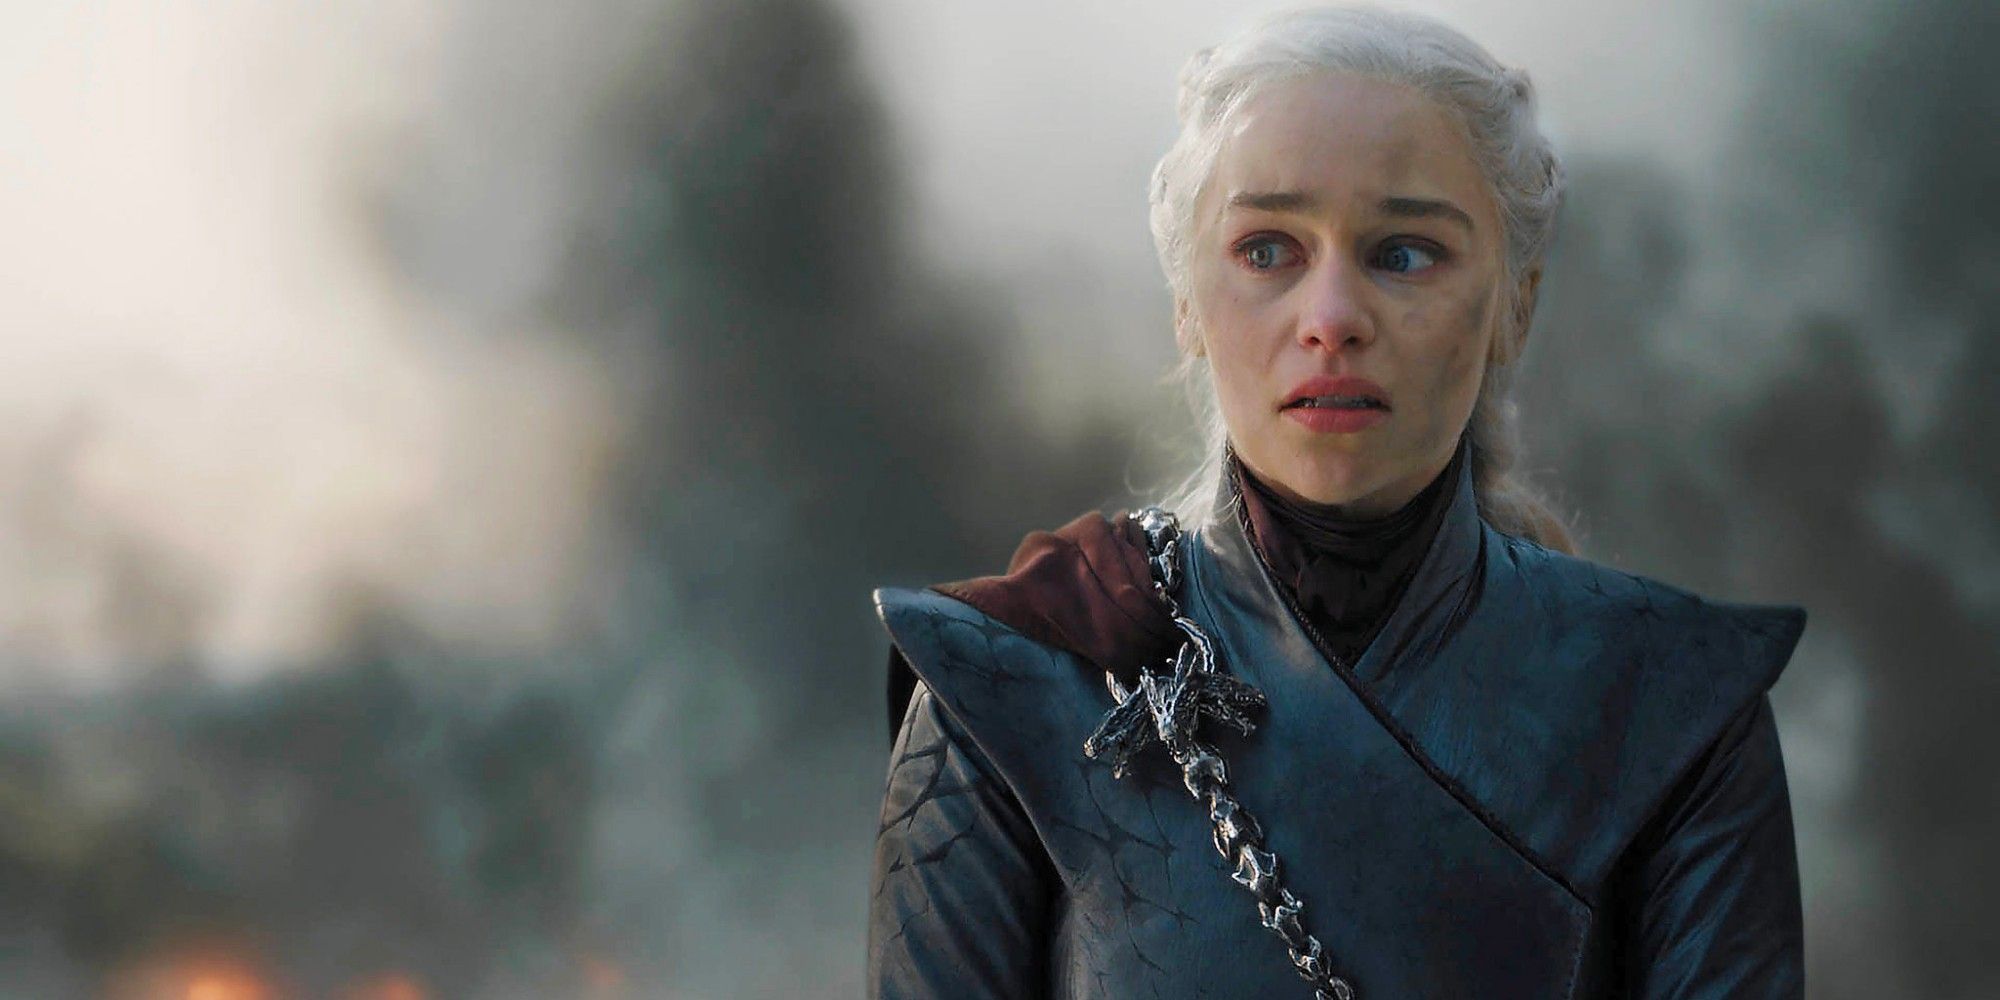 Daenerys Targaryen looking emotional while smoke blows behind her in Game of Thrones.